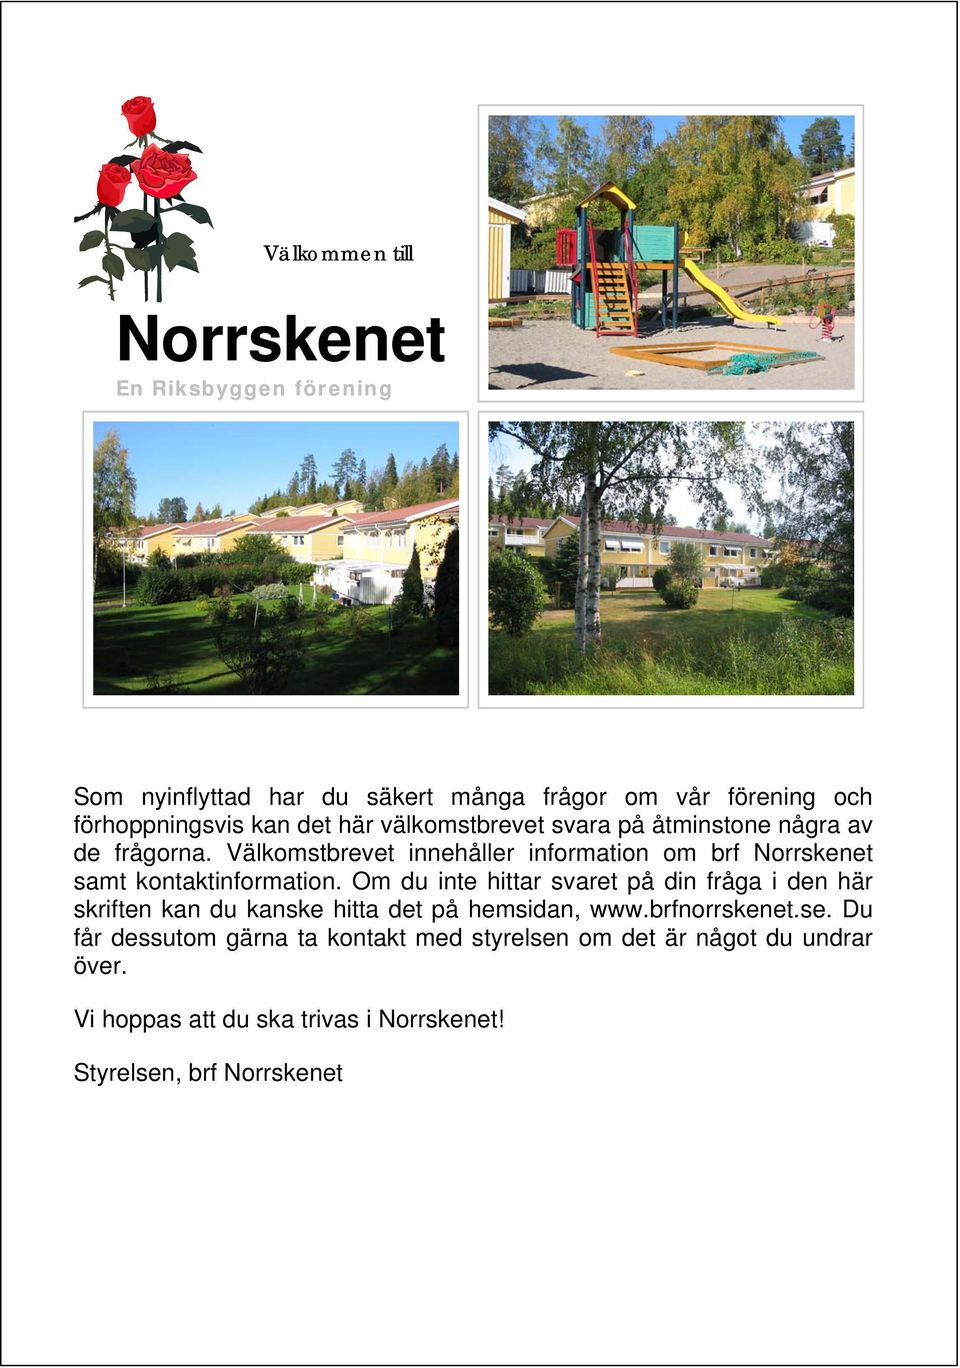 Välkomstbrevet innehåller information om brf Norrskenet samt kontaktinformation.